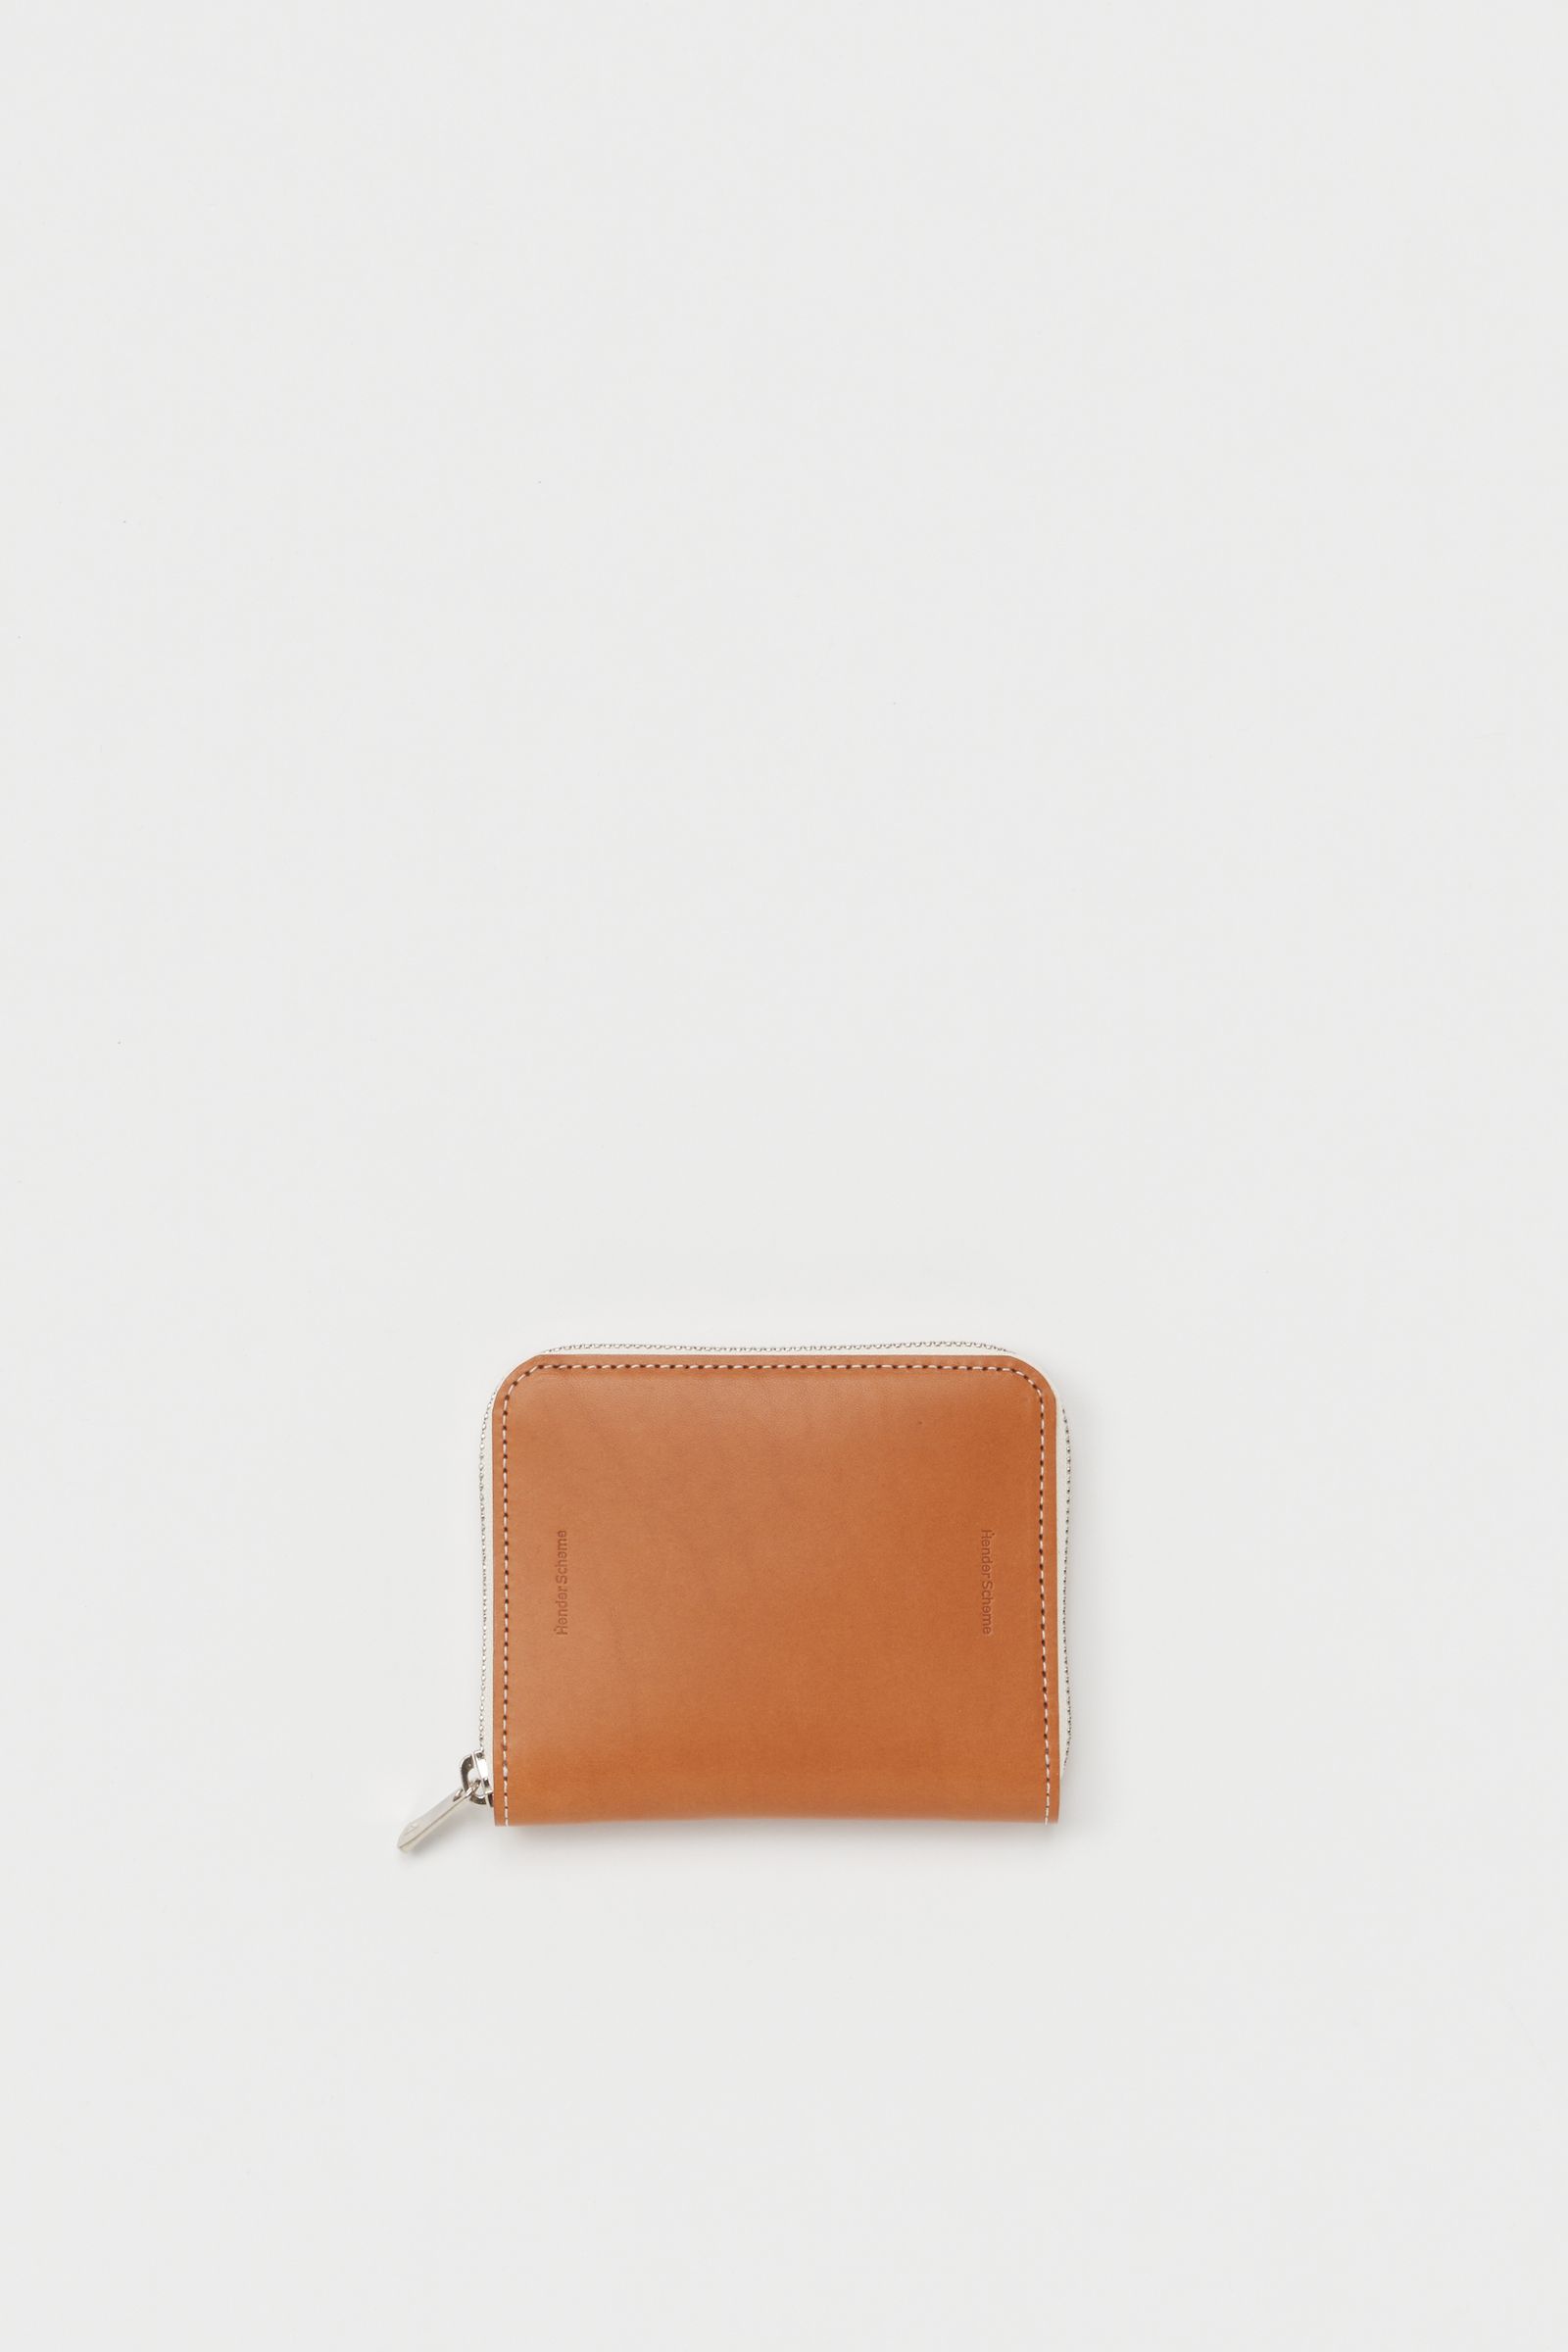 Hender Scheme - エンダースキーマ 財布 square zip purse(ur-rc-szp